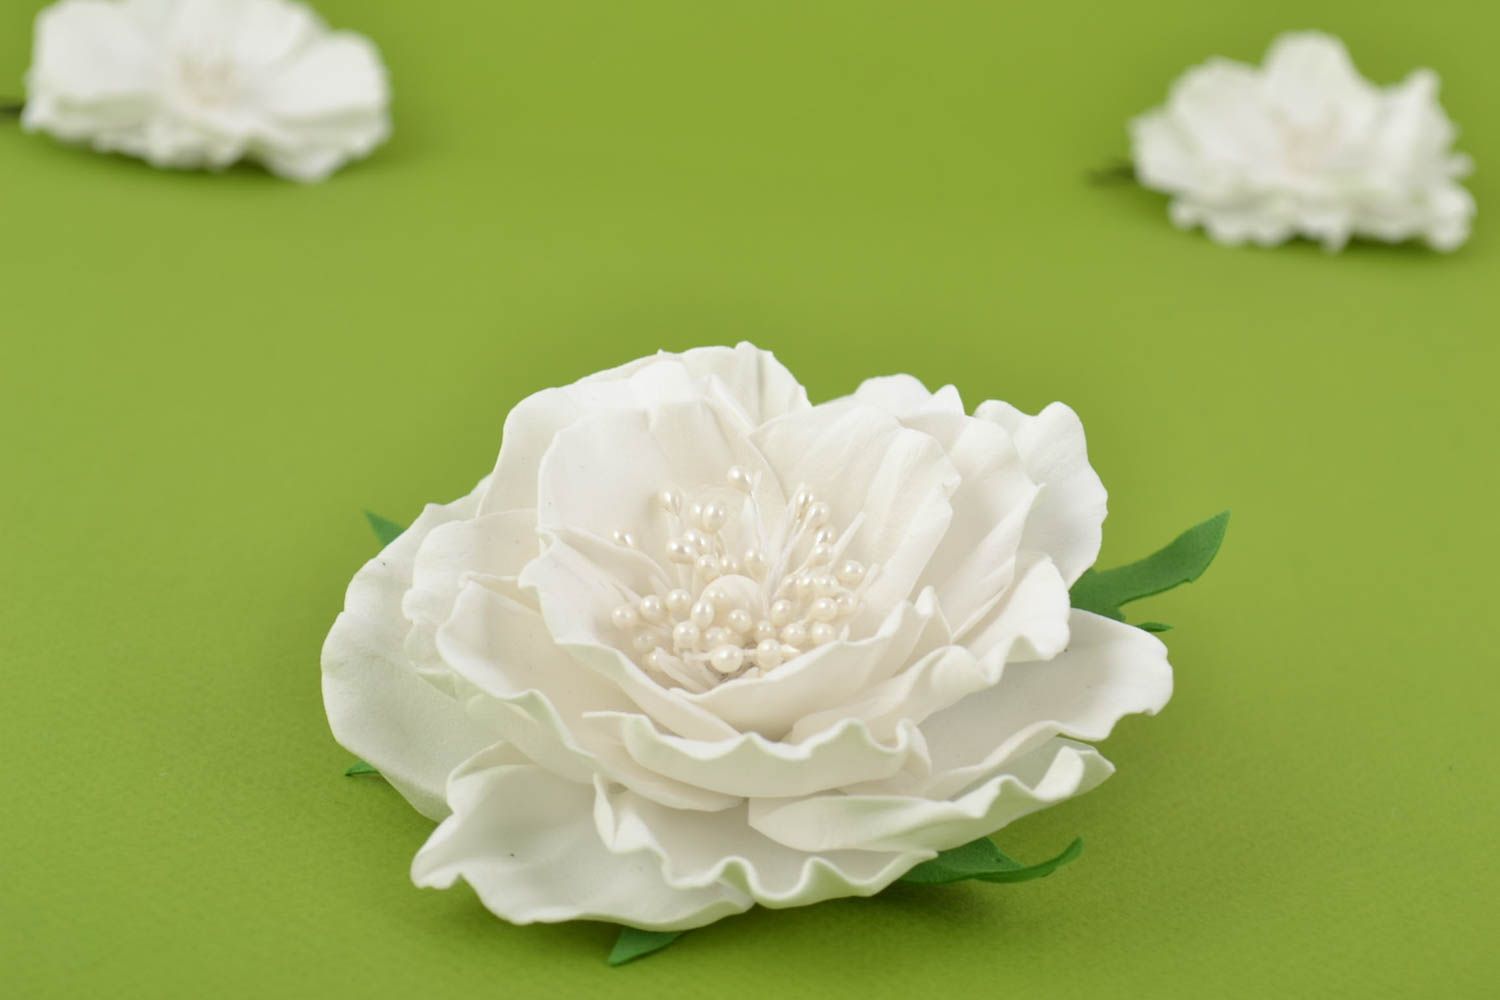 Брошь из фоамирана ручной работы в виде белого цветка красивая авторская фото 1